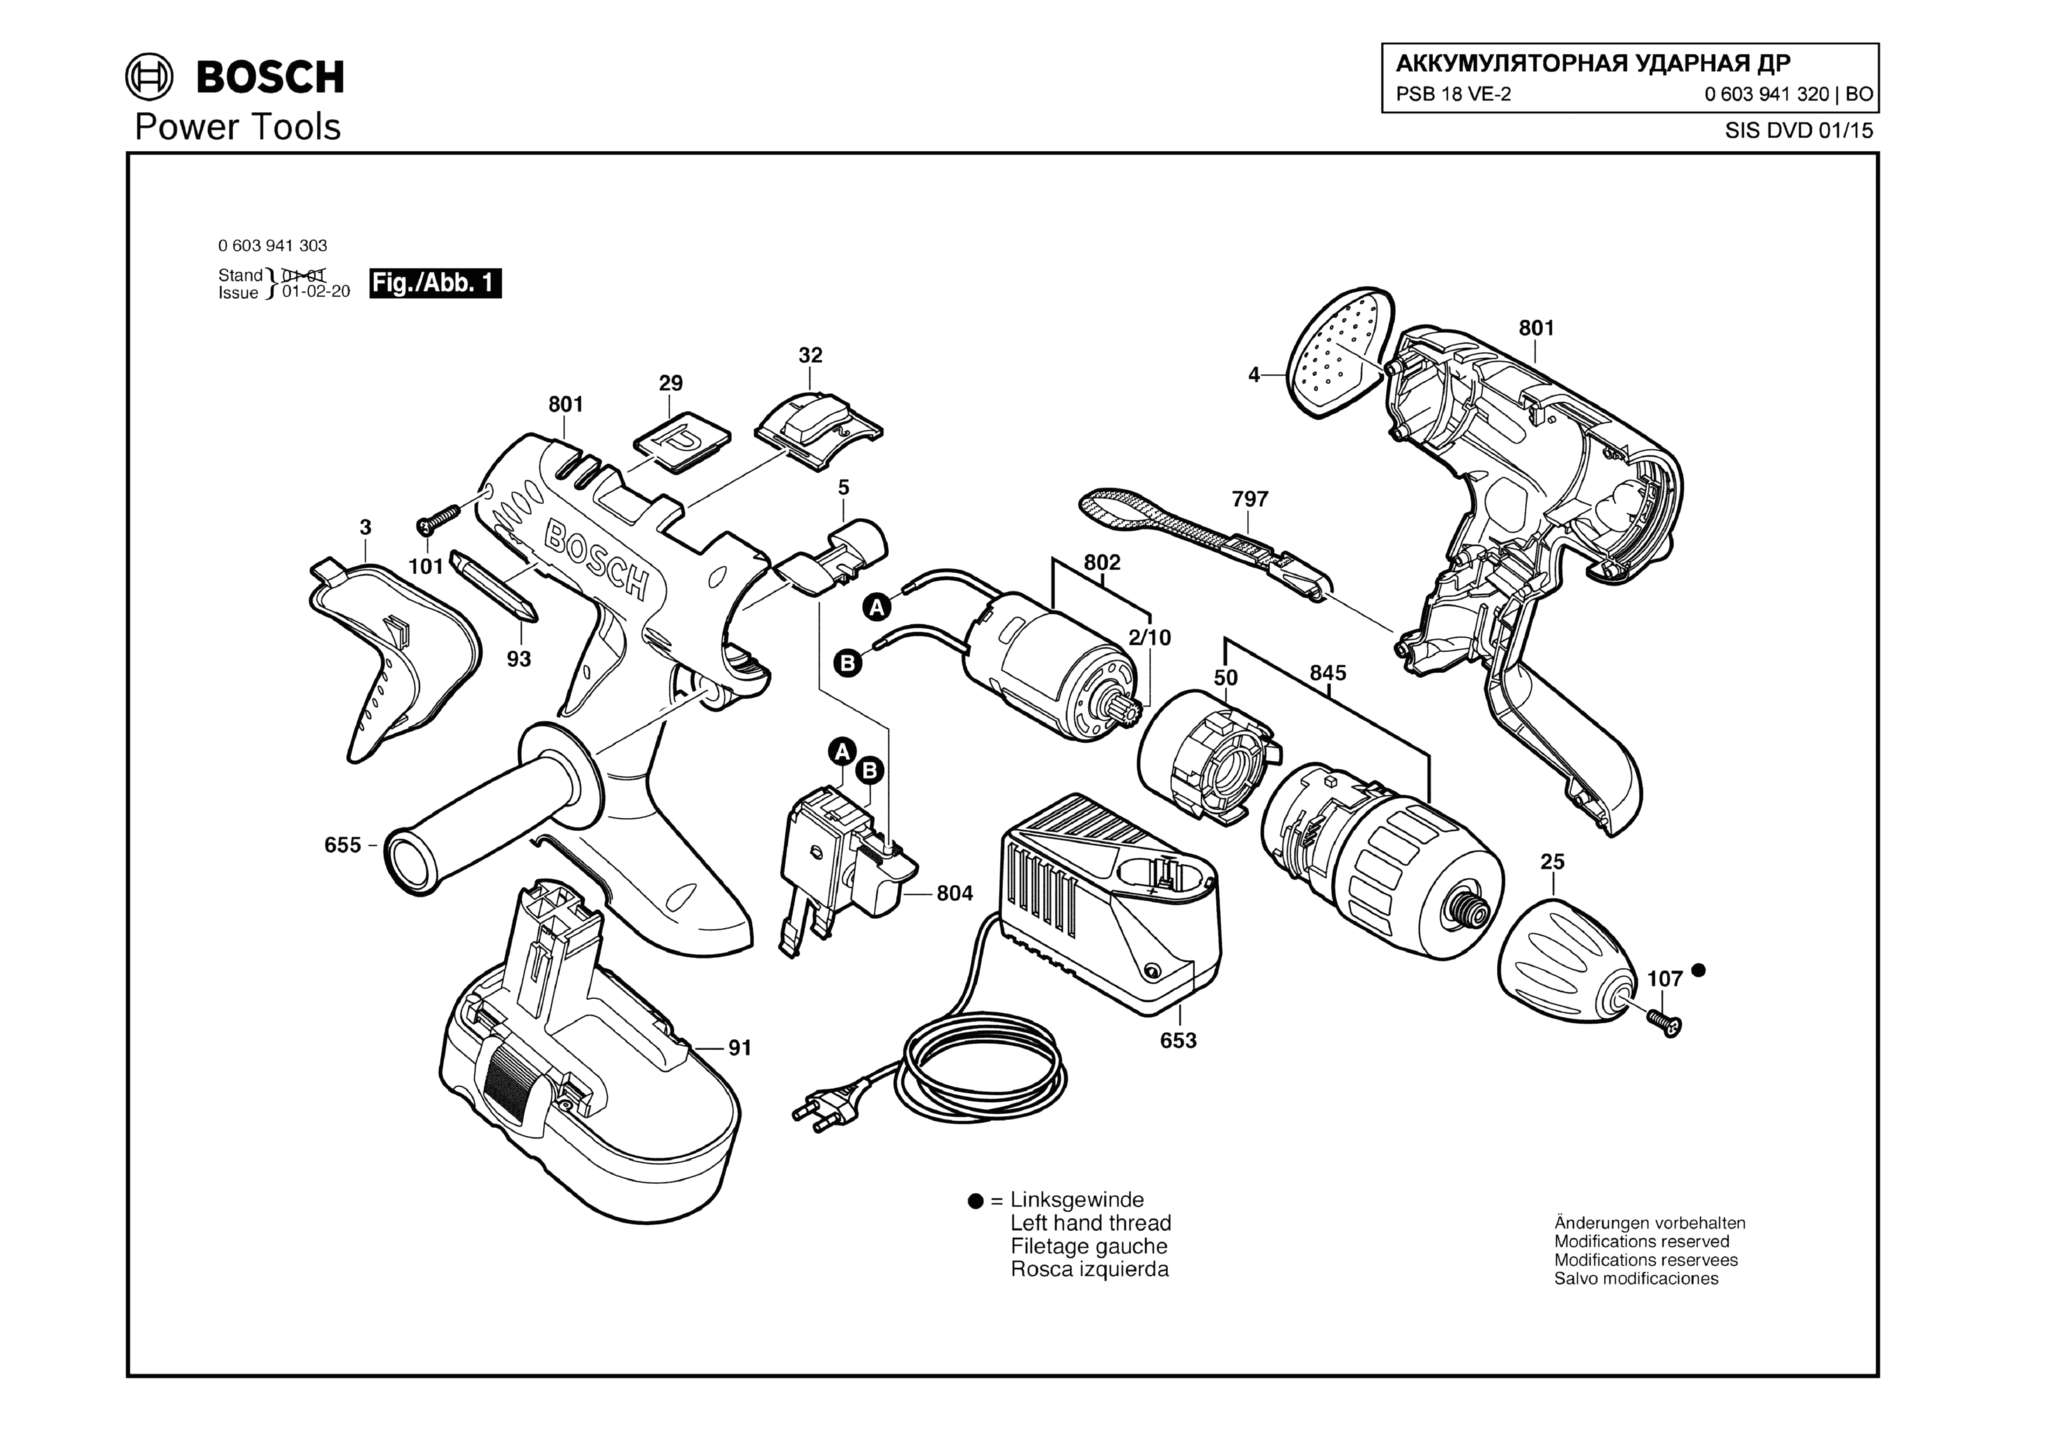 Запчасти, схема и деталировка Bosch PSB 18 VE-2 (ТИП 0603941320)